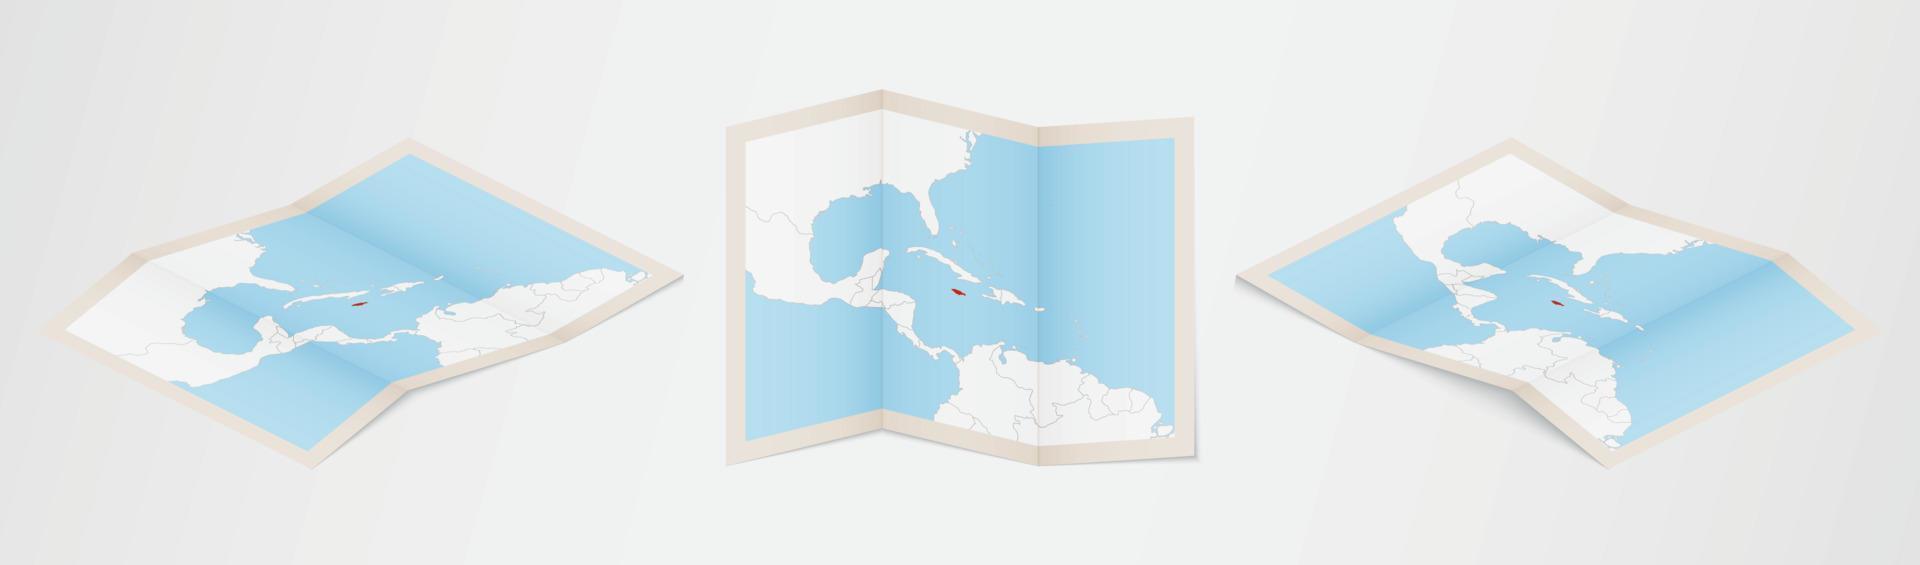 piegato carta geografica di Giamaica nel tre diverso versioni. vettore